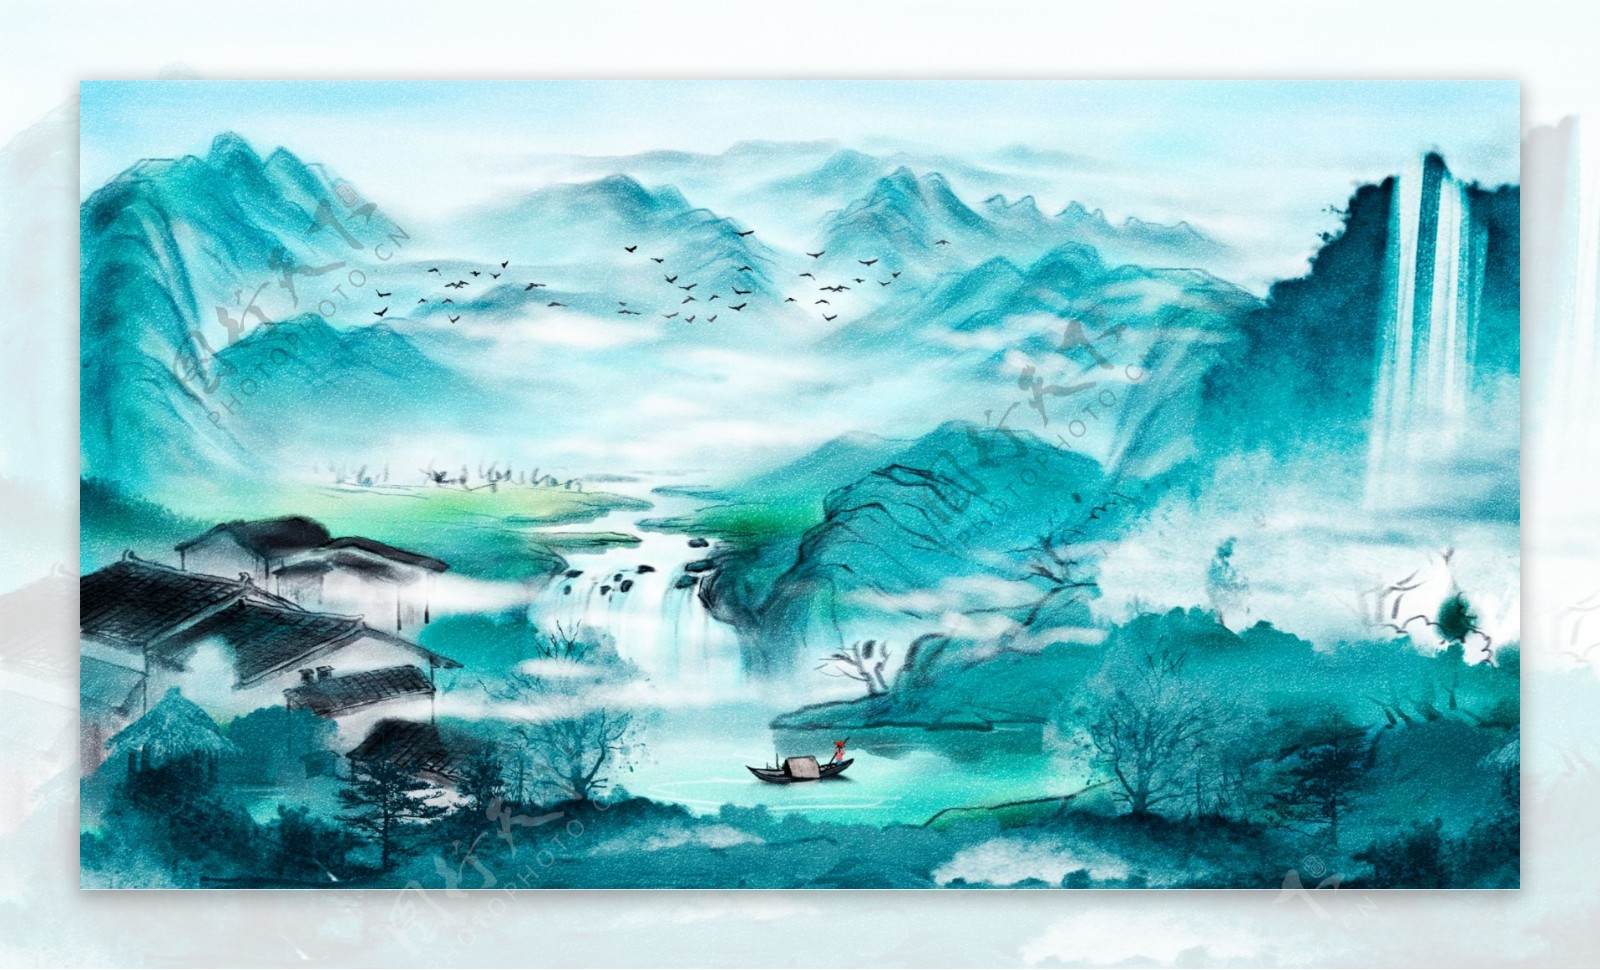 唯美中国复古水墨画风景画中国水彩画插画